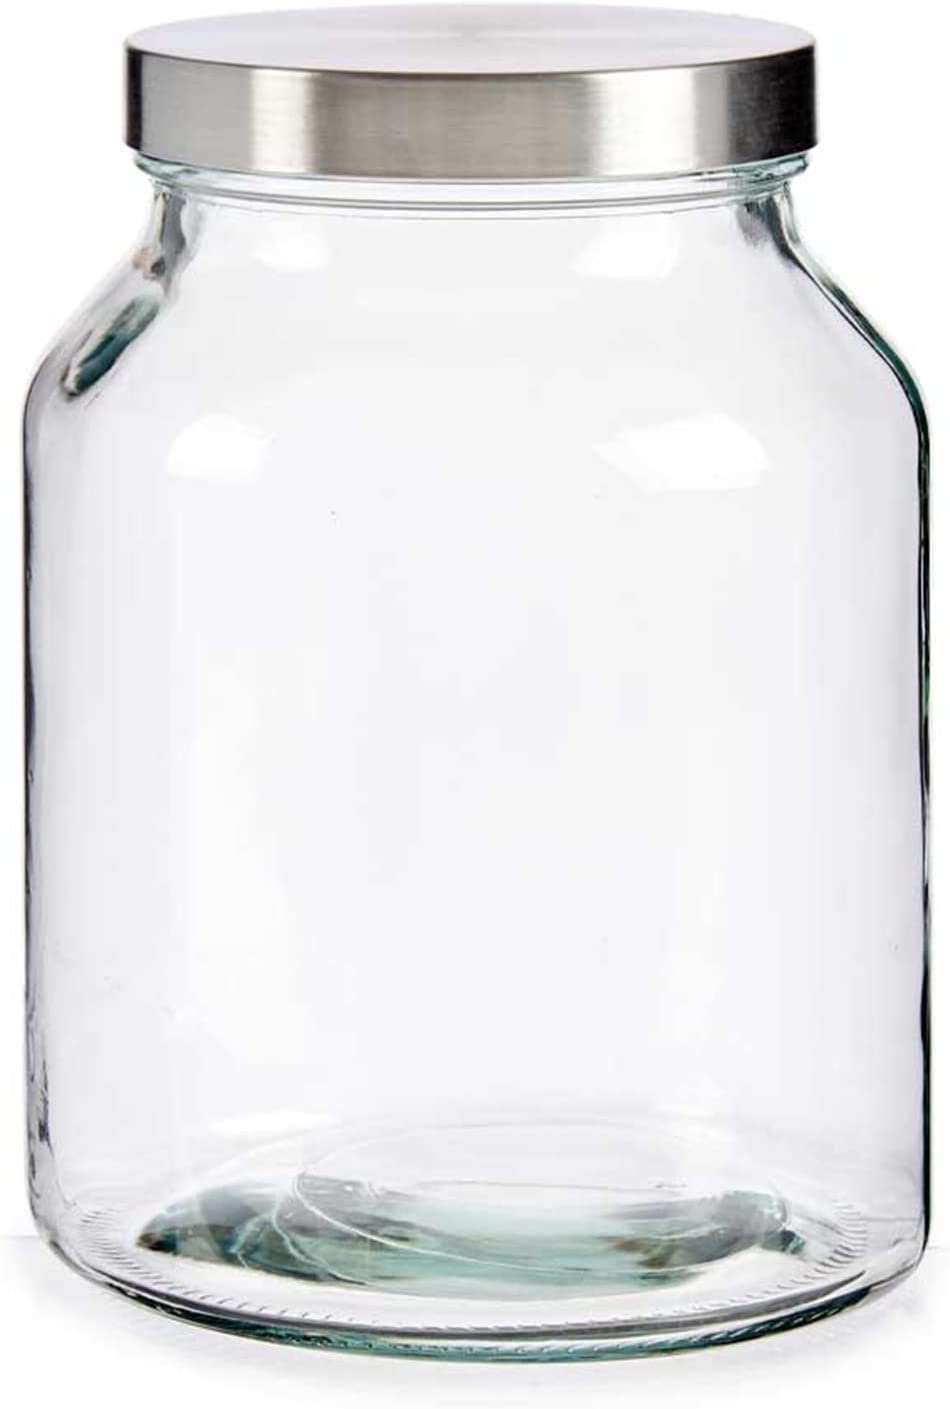 Bote de cocina de cristal 3 litros